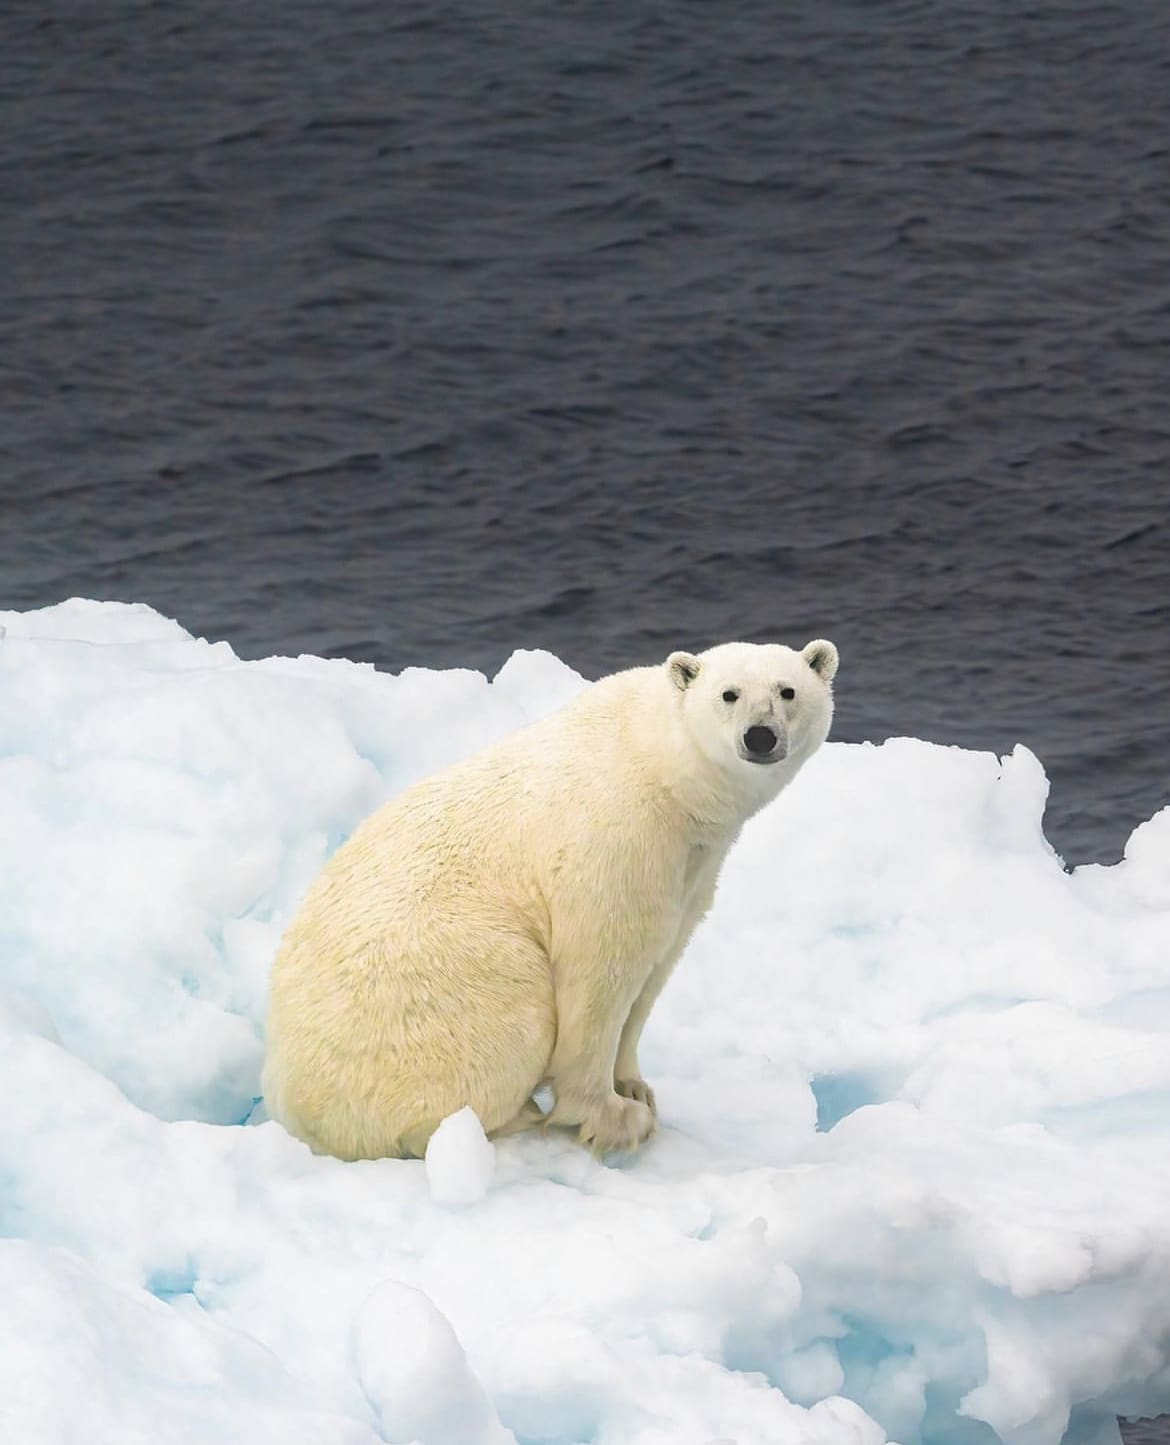 A lone polar bear sitting on ice, alongside the arctic ocean